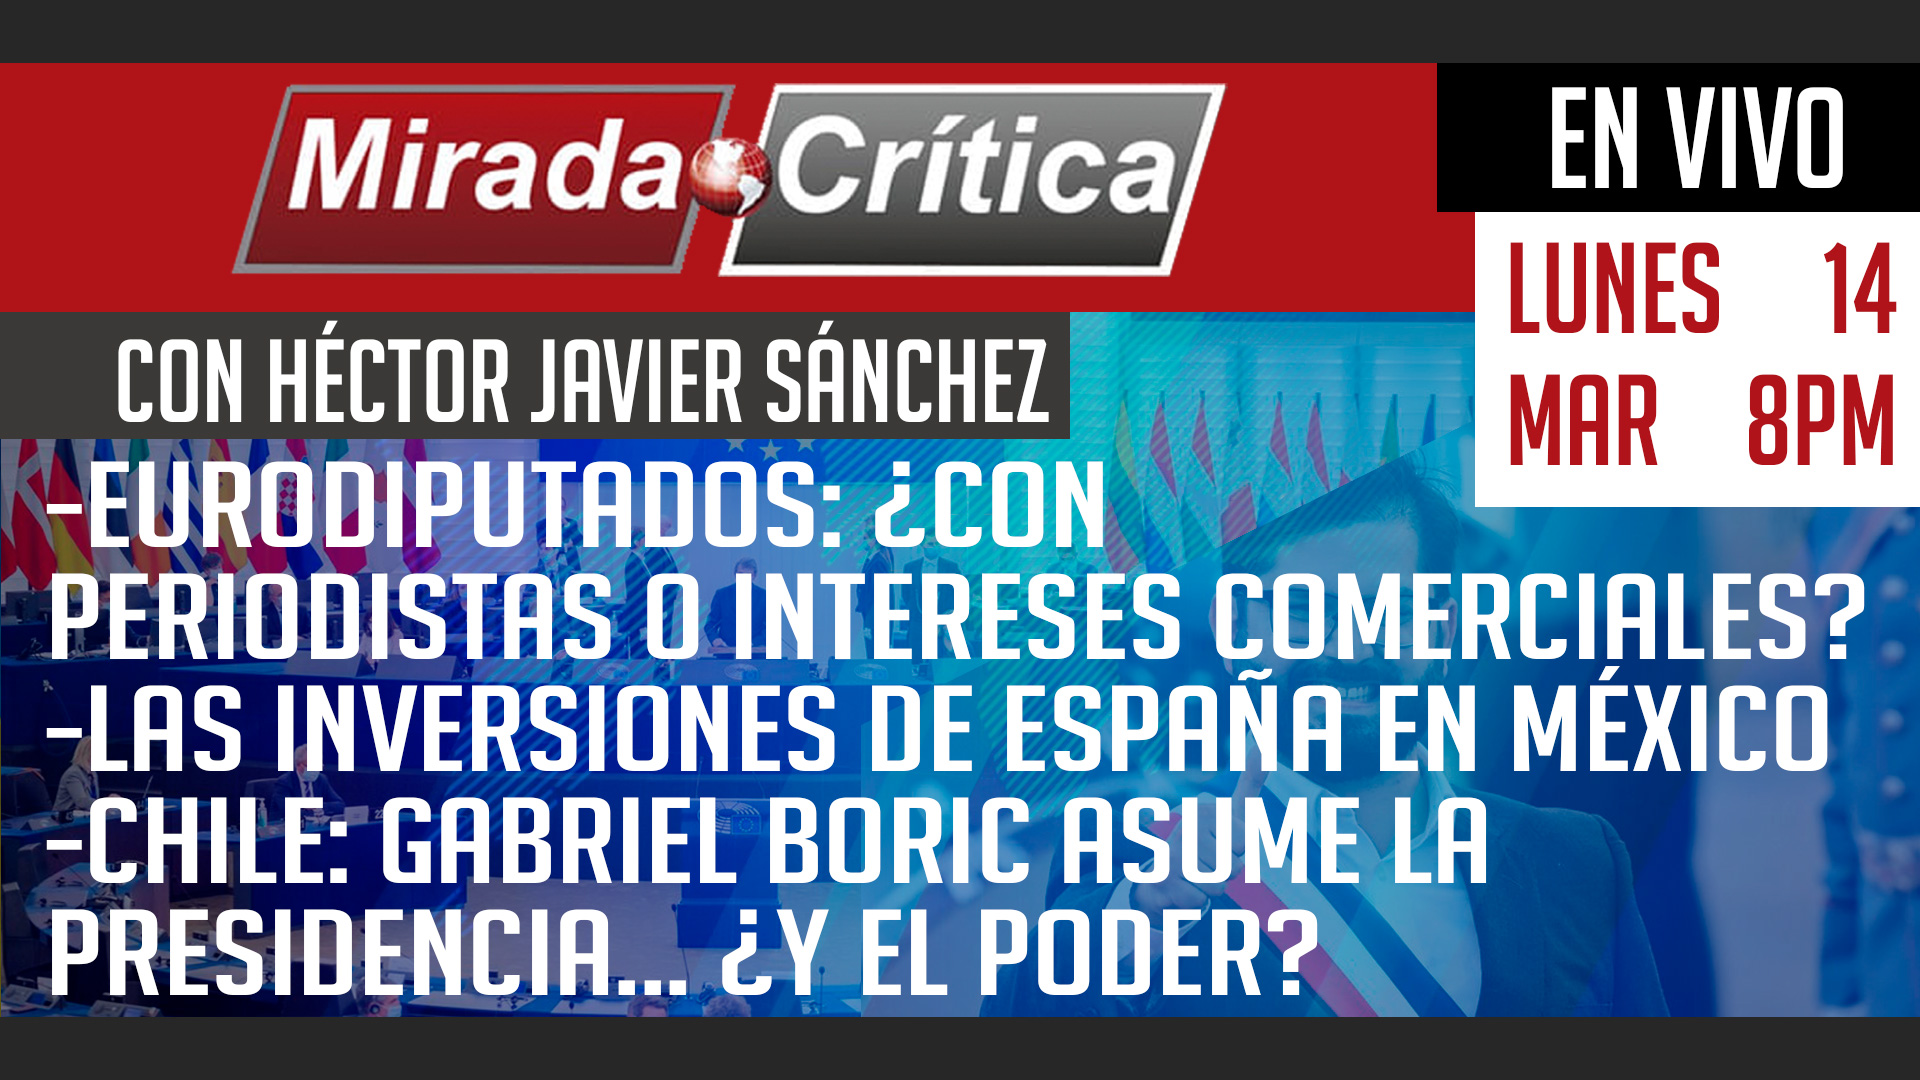 Eurodiputados: ¿con periodistas o intereses comerciales?/Las inversiones de España en México - Mirada Crítica